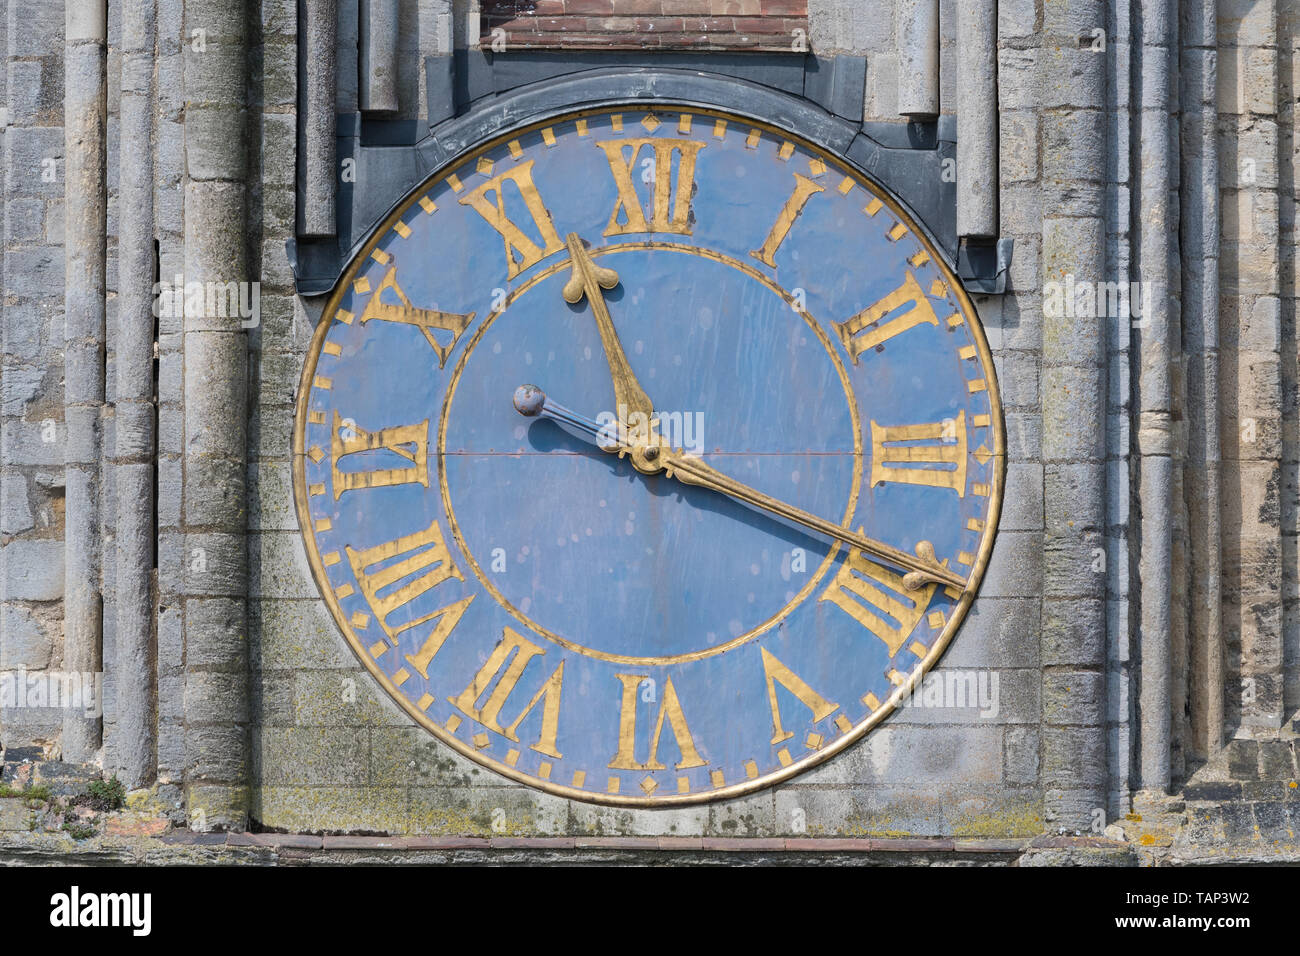 L'horloge de l'église bleue et or avec chiffres romains - Cathédrale d'Ely, Cambridgeshire, Angleterre, RU Banque D'Images